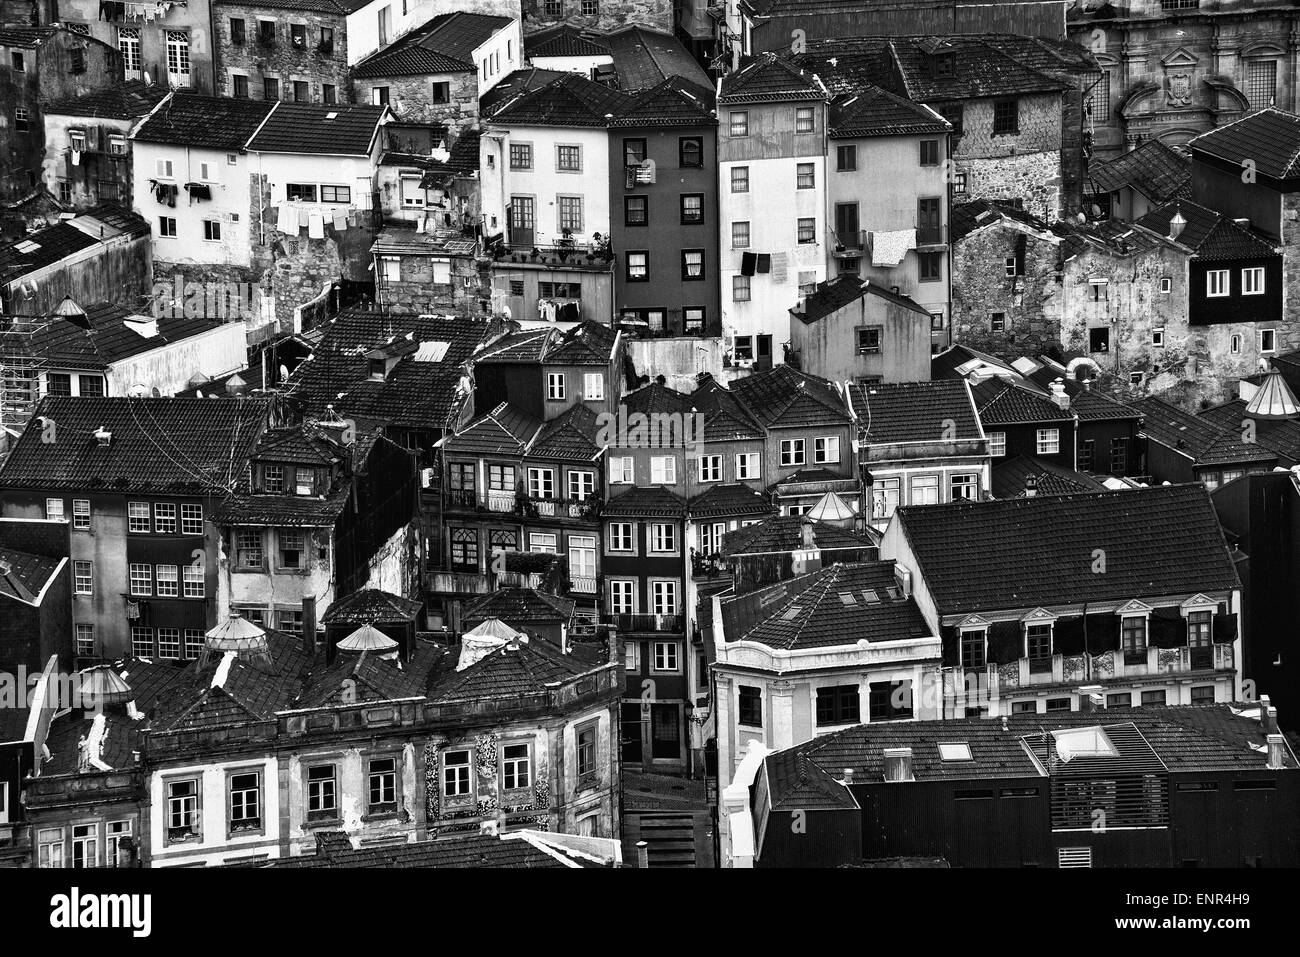 Ribeira - old town of Porto, Portugal Stock Photo